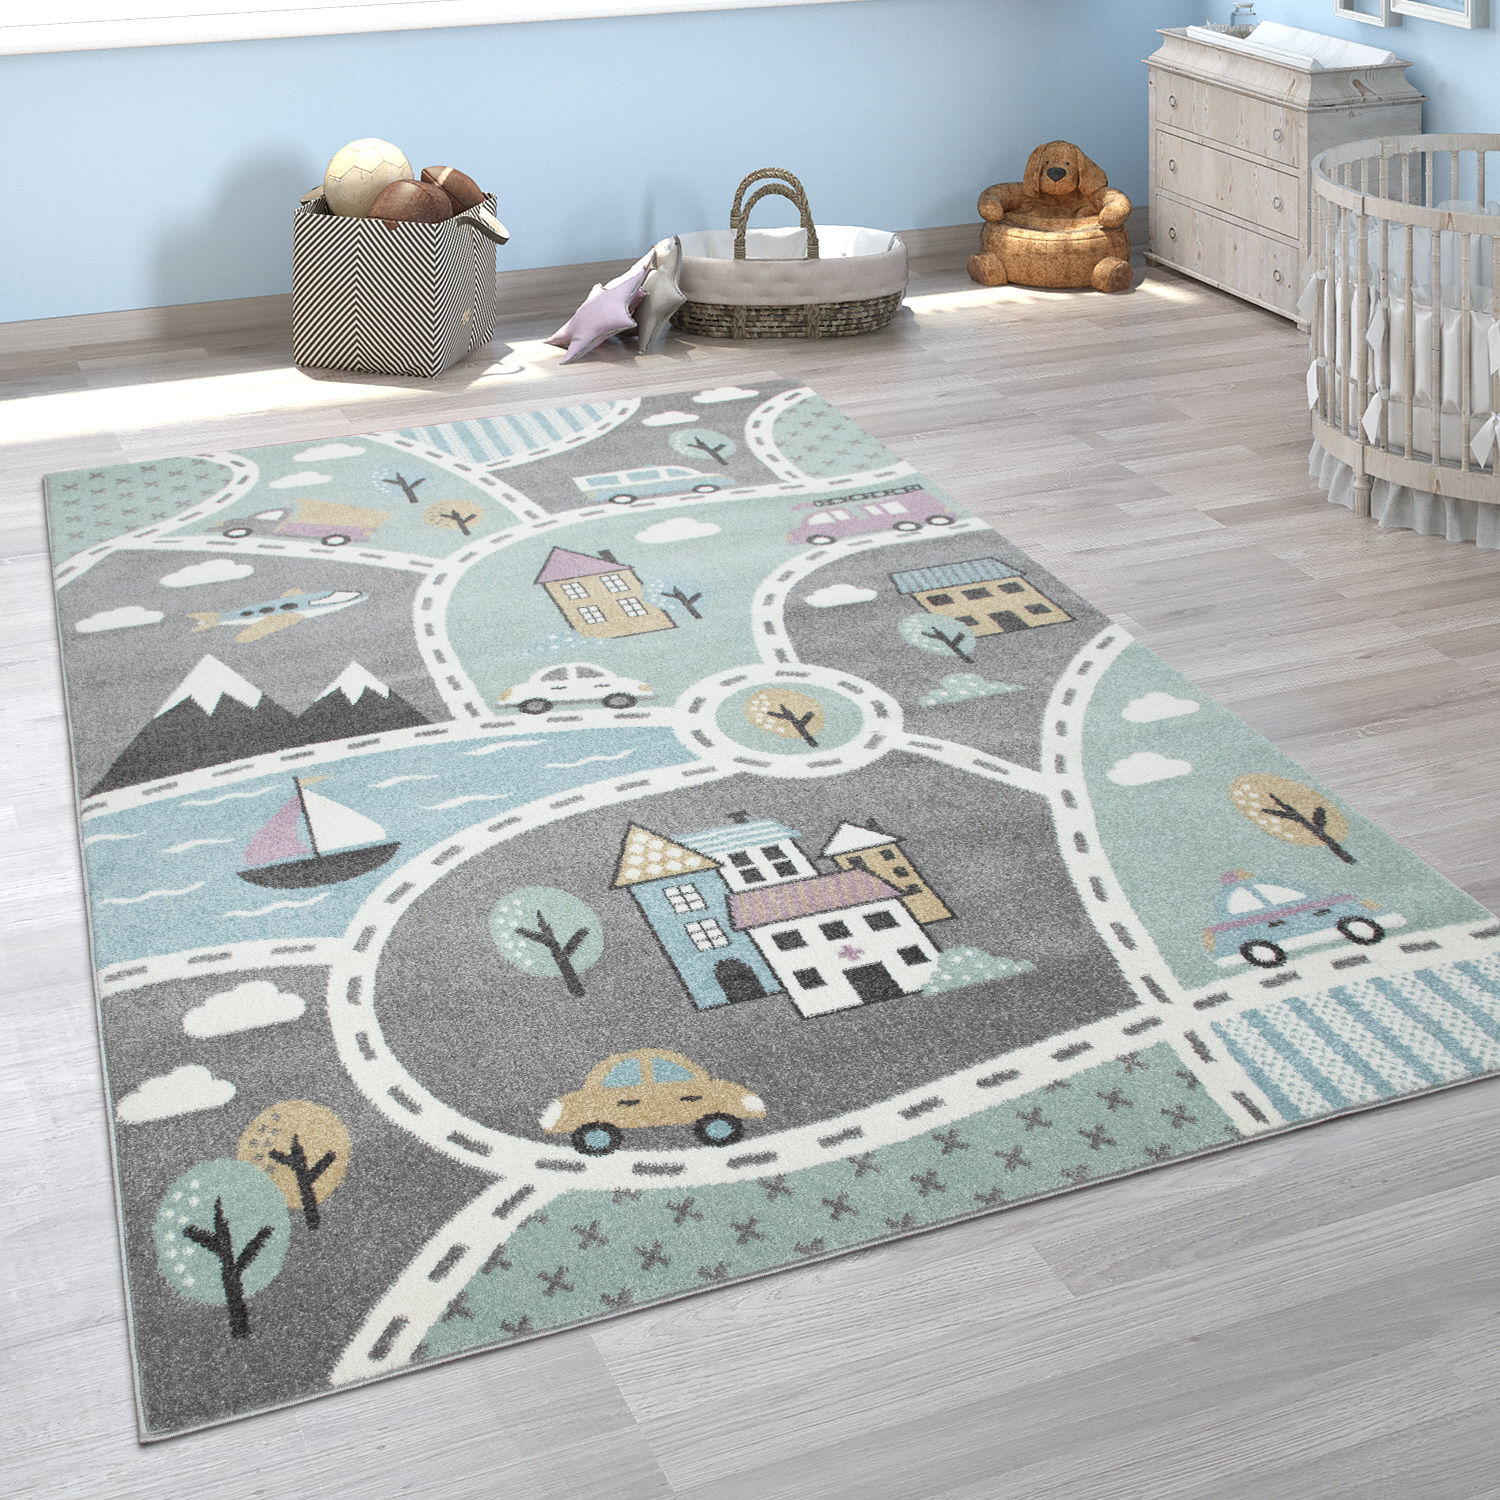 Kinderteppich Spielteppich Für Kinderzimmer Straßen Motiv Grau Blau Weiß Farbe:Silber Grösse:80x150 cm 